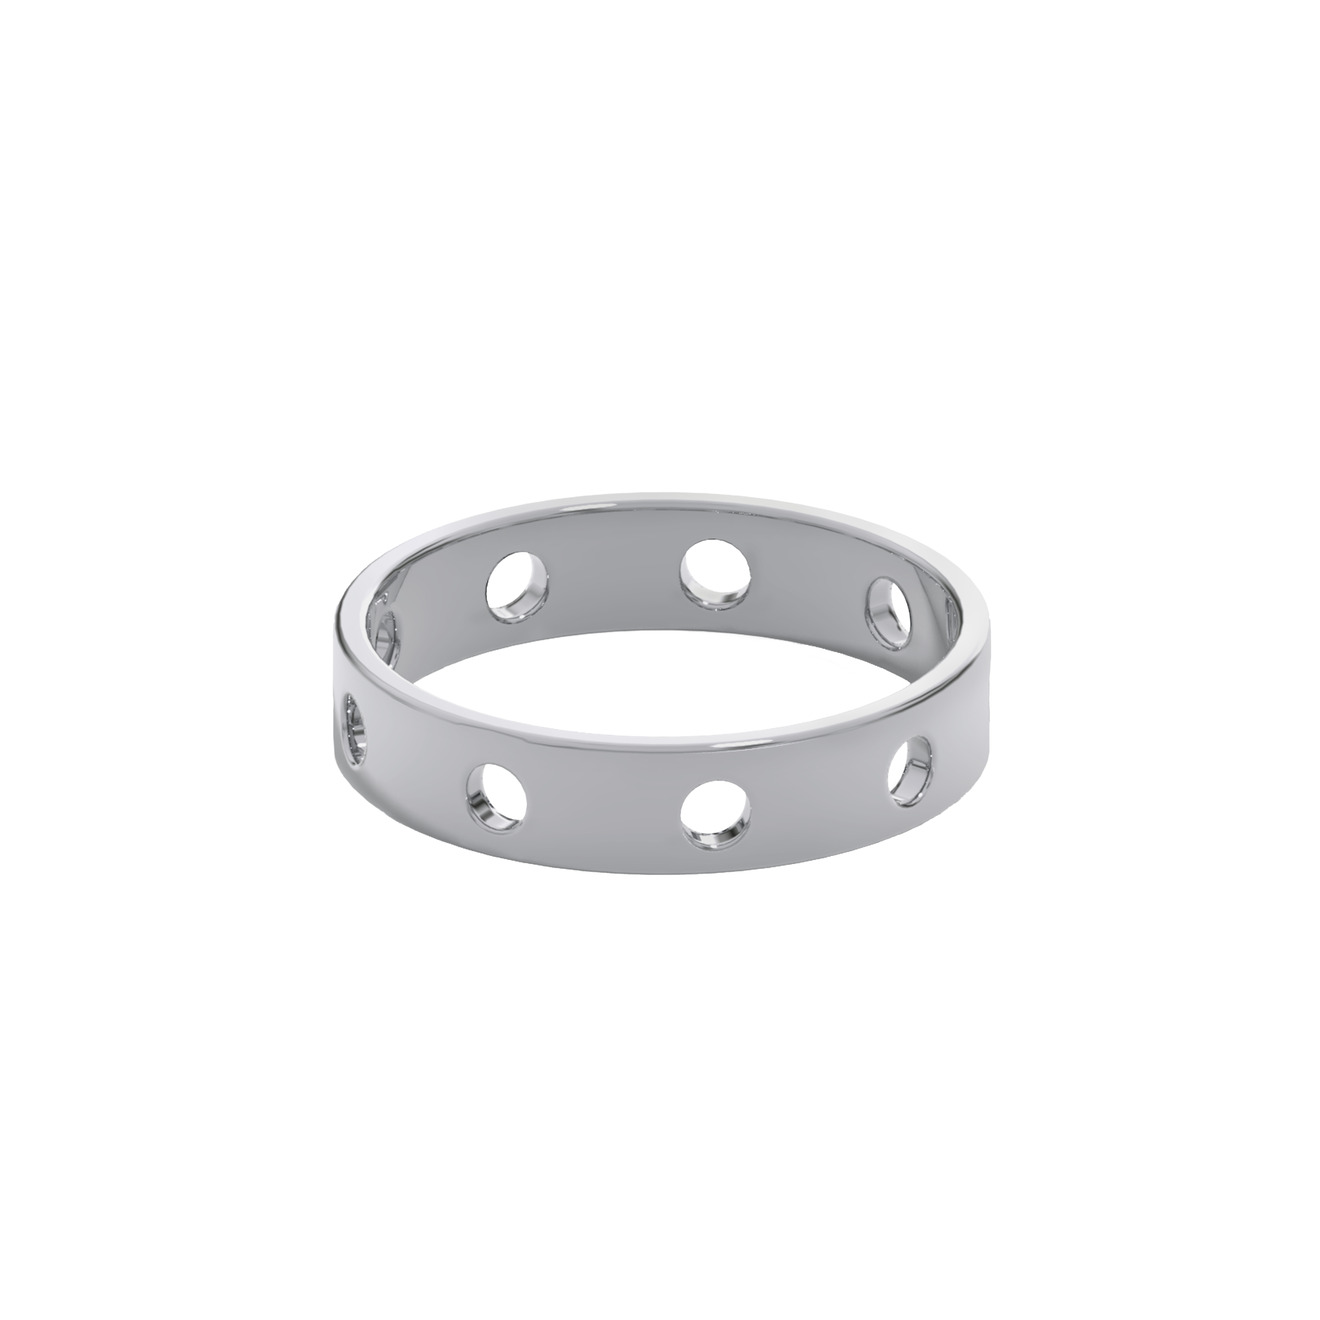 Prosto Jewelry Кольцо из серебра с окошками prosto jewelry анклет из серебра с регулировкой